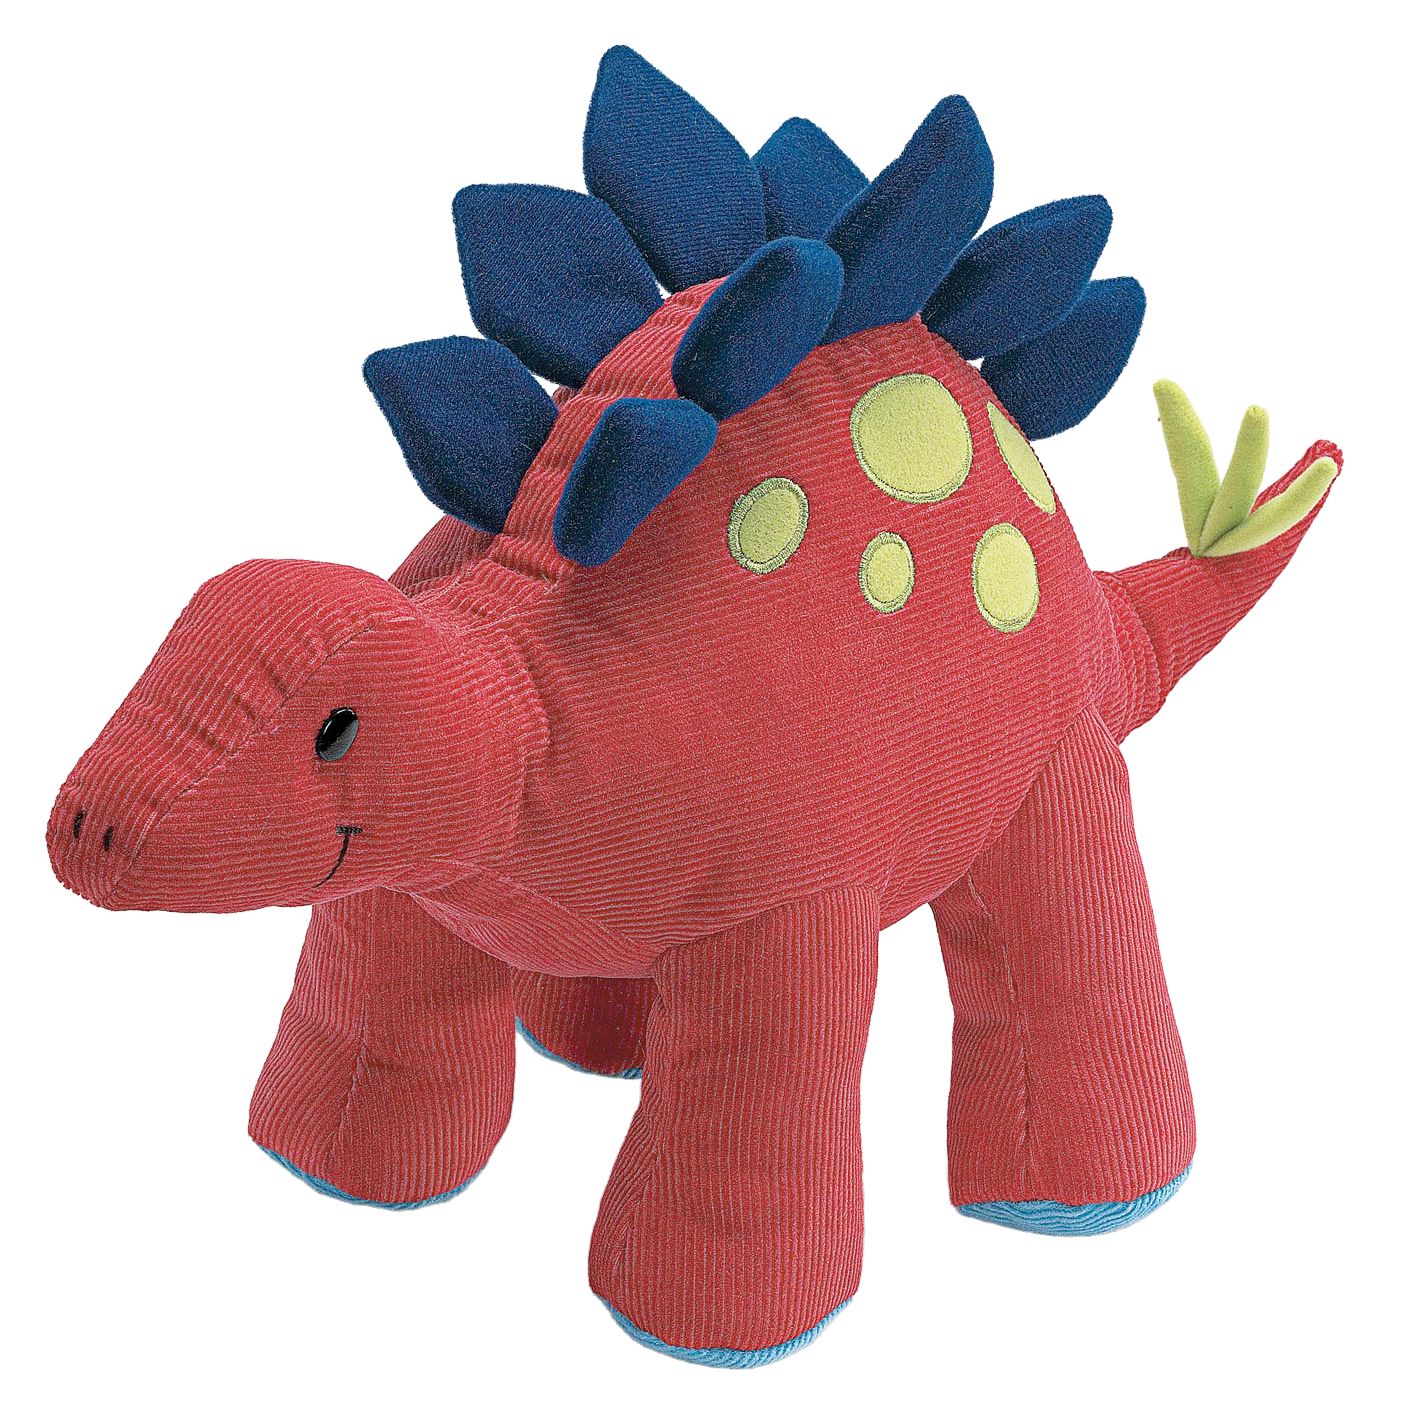 Steggy Stegosaurus Soft Toy, Large